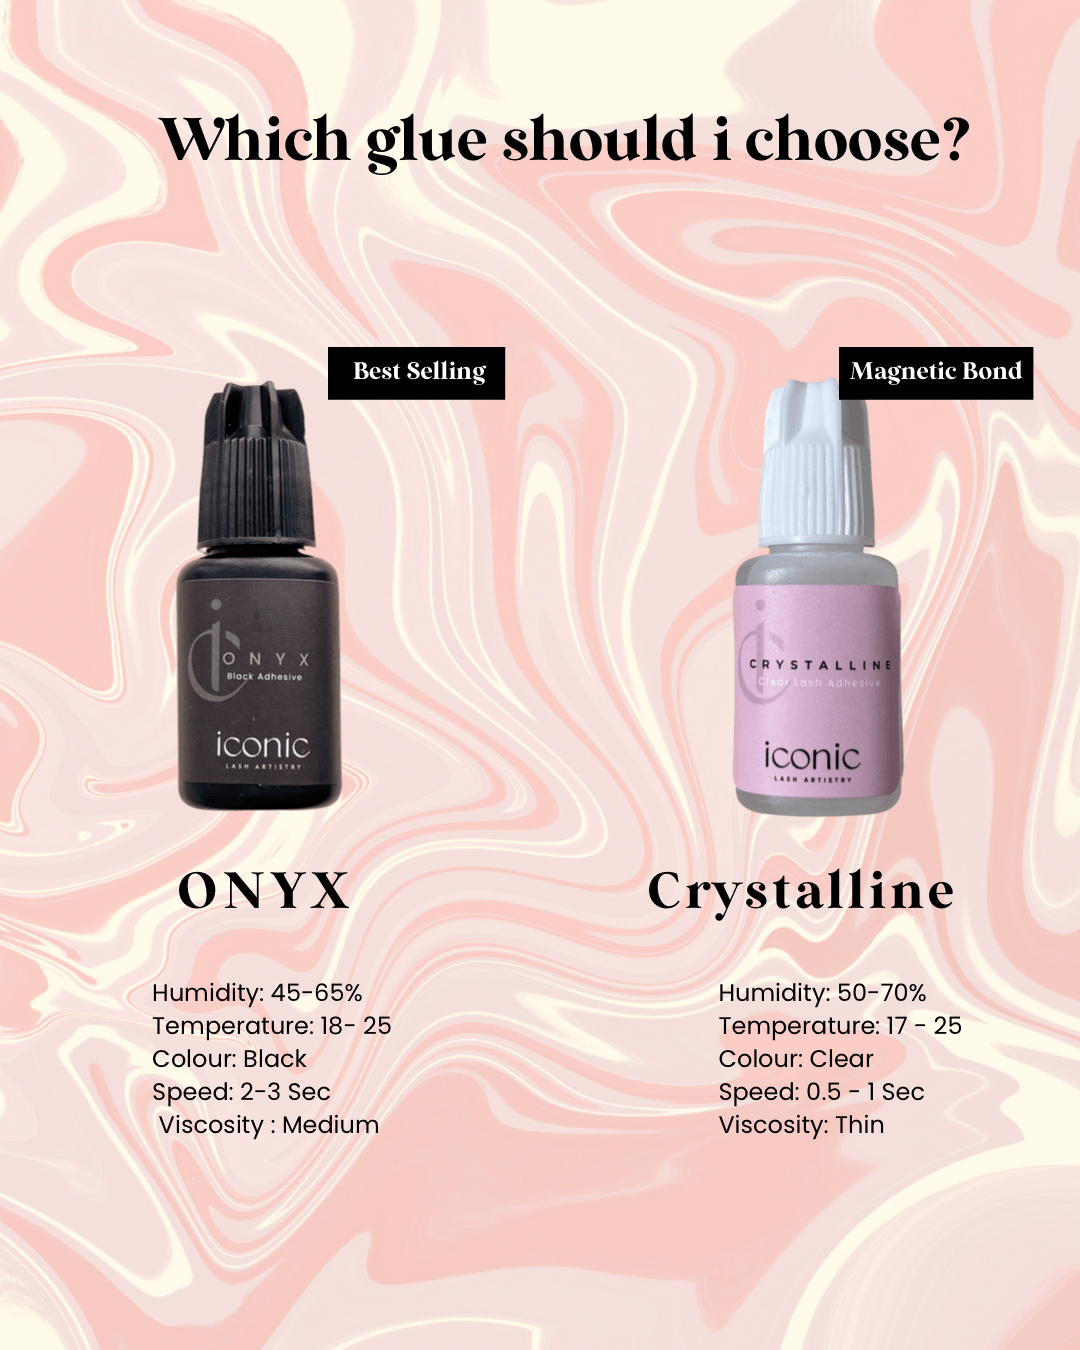 Onyx vs Crystalline